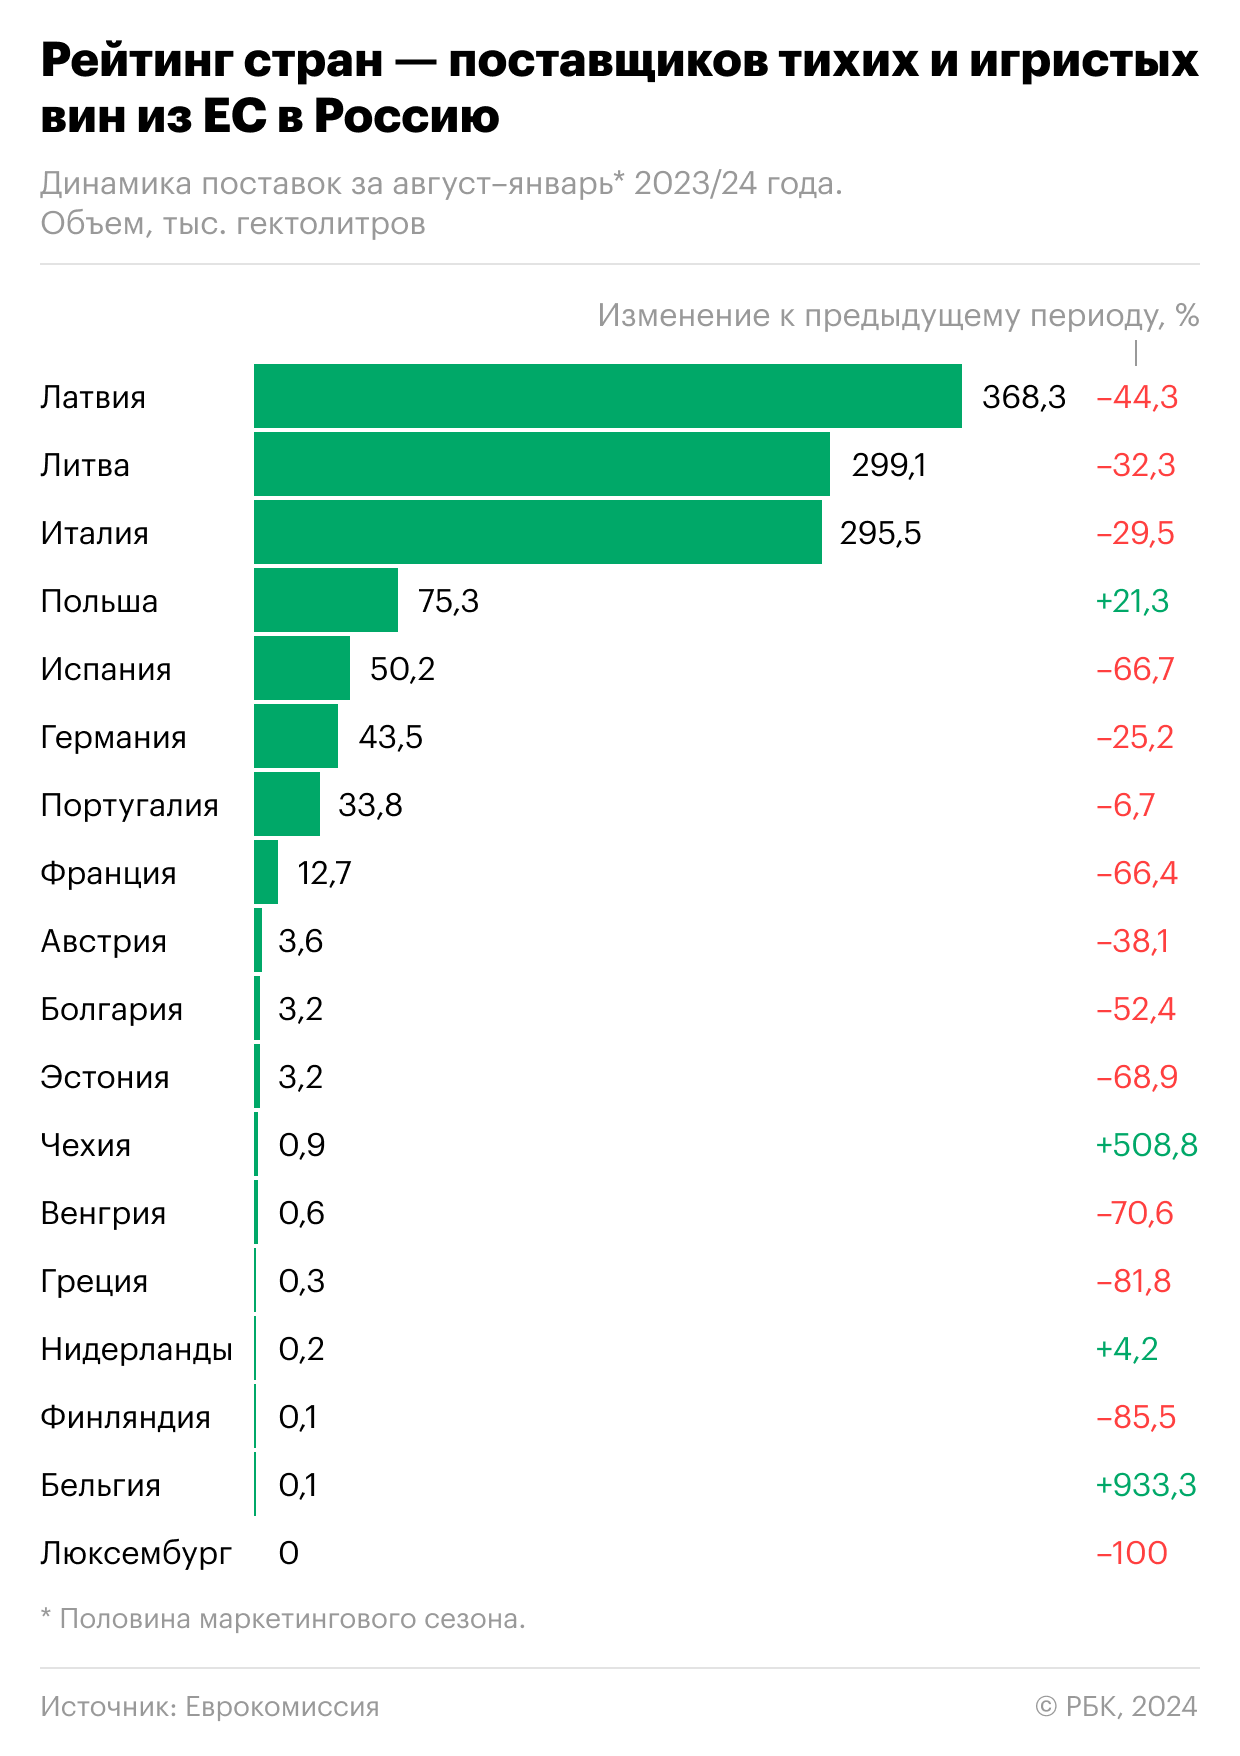 Импорт вина из стран Евросоюза упал почти на 40%